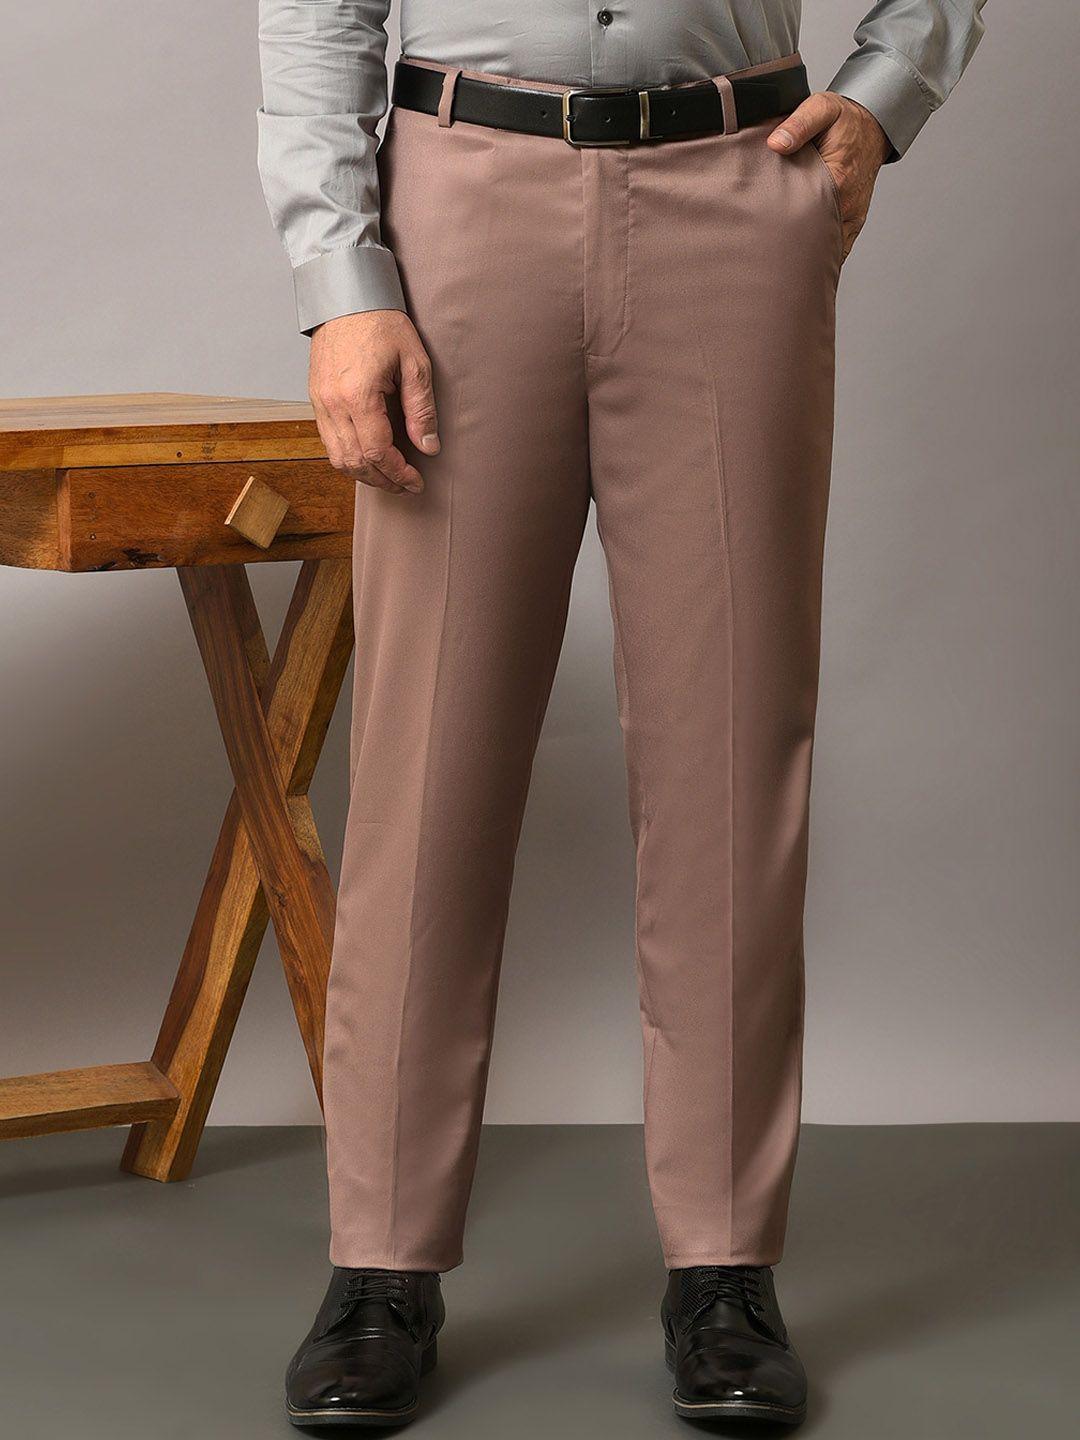 hangup men mid-rise original formal trousers